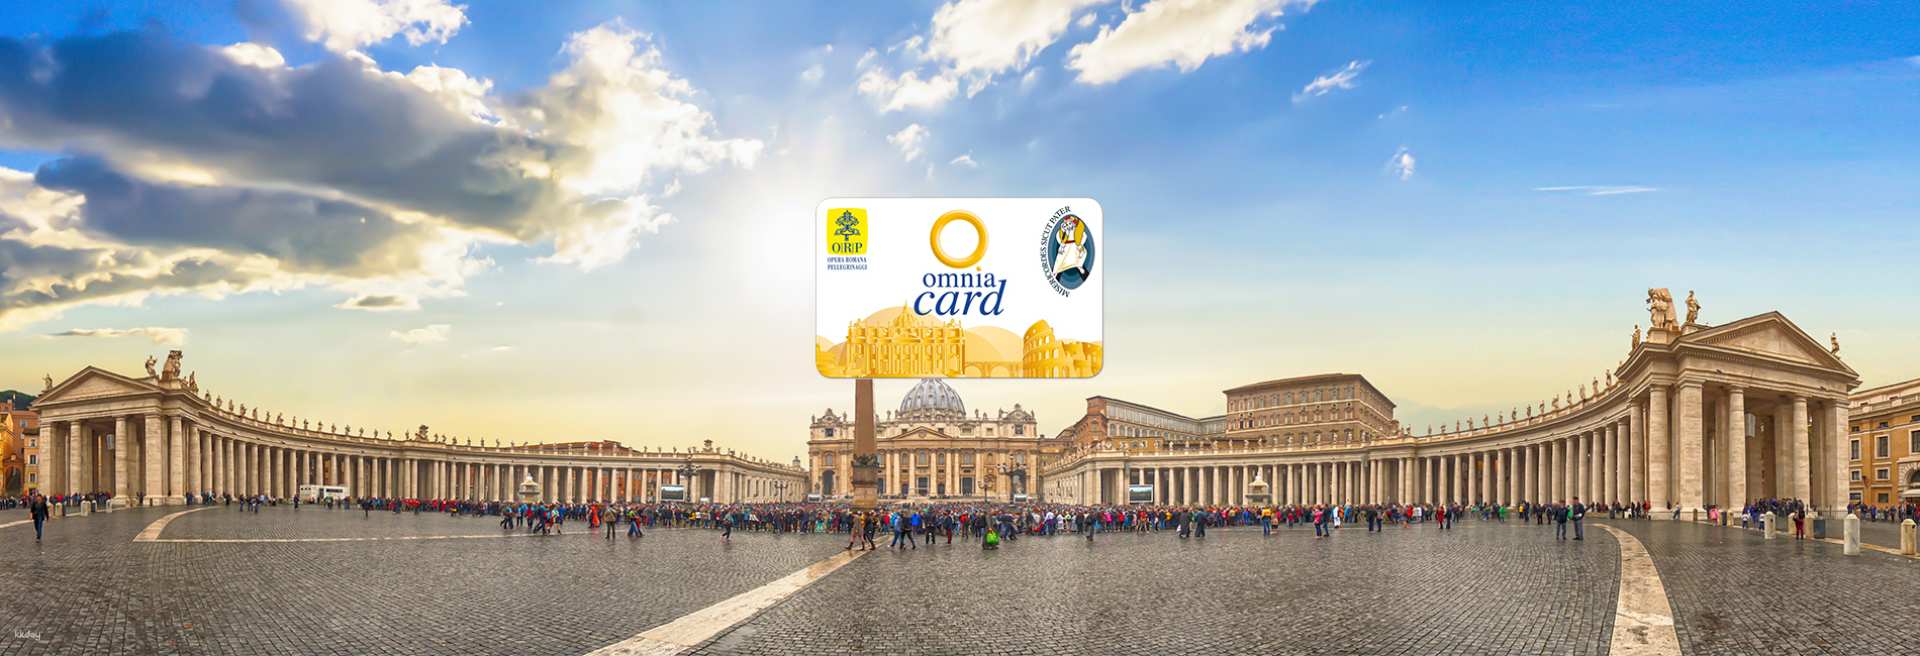 義大利-梵蒂岡＆羅馬72小時通行證 OMNIA  Rome & Vatican 72 Hours Pass| 義大利交通景點套票